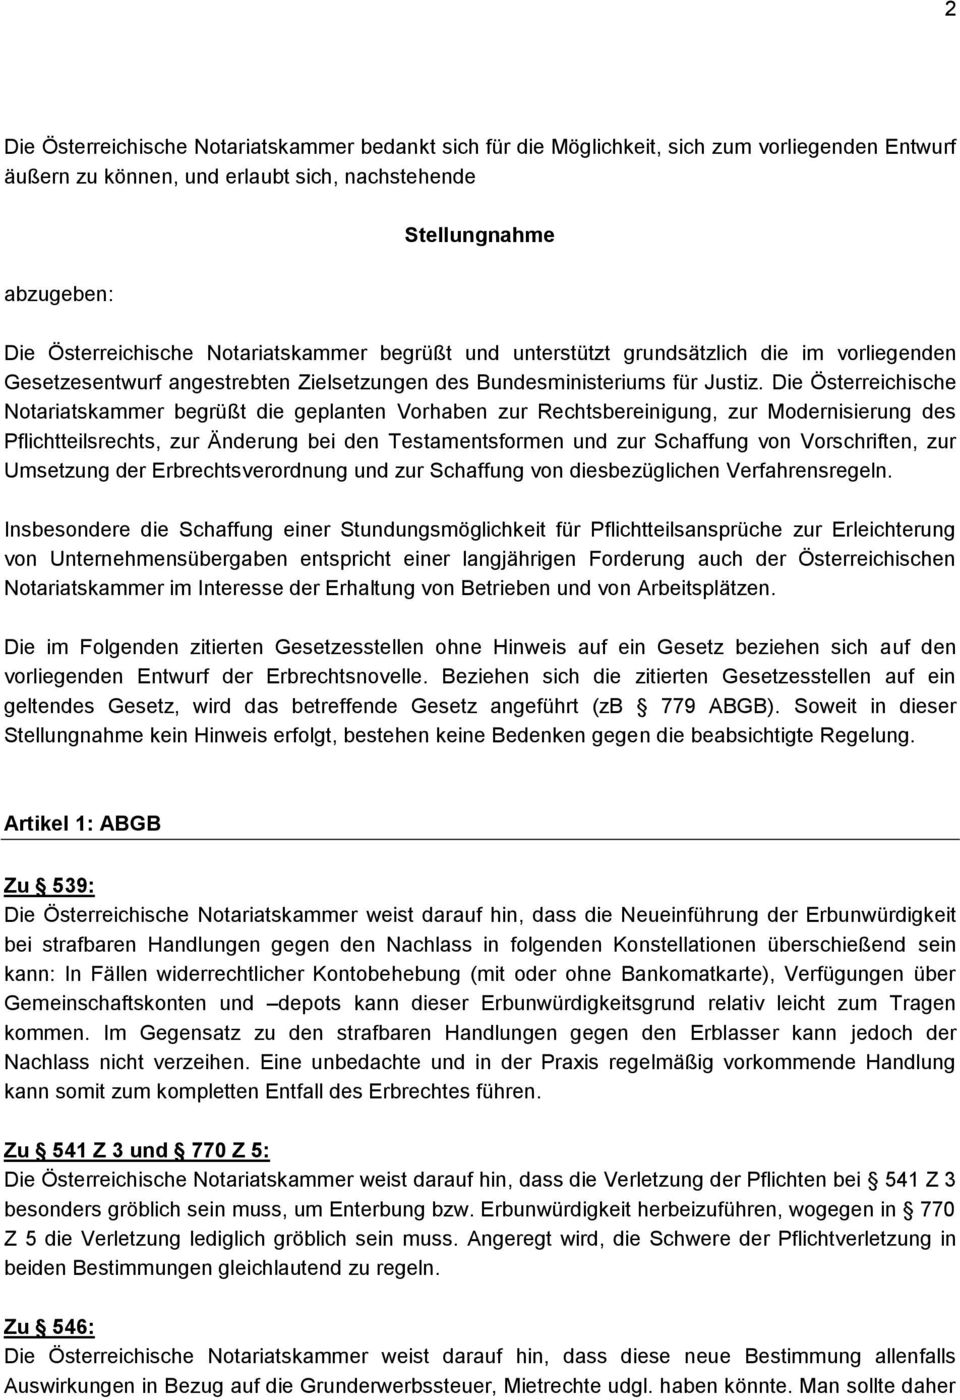 Die Österreichische Notariatskammer begrüßt die geplanten Vorhaben zur Rechtsbereinigung, zur Modernisierung des Pflichtteilsrechts, zur Änderung bei den Testamentsformen und zur Schaffung von